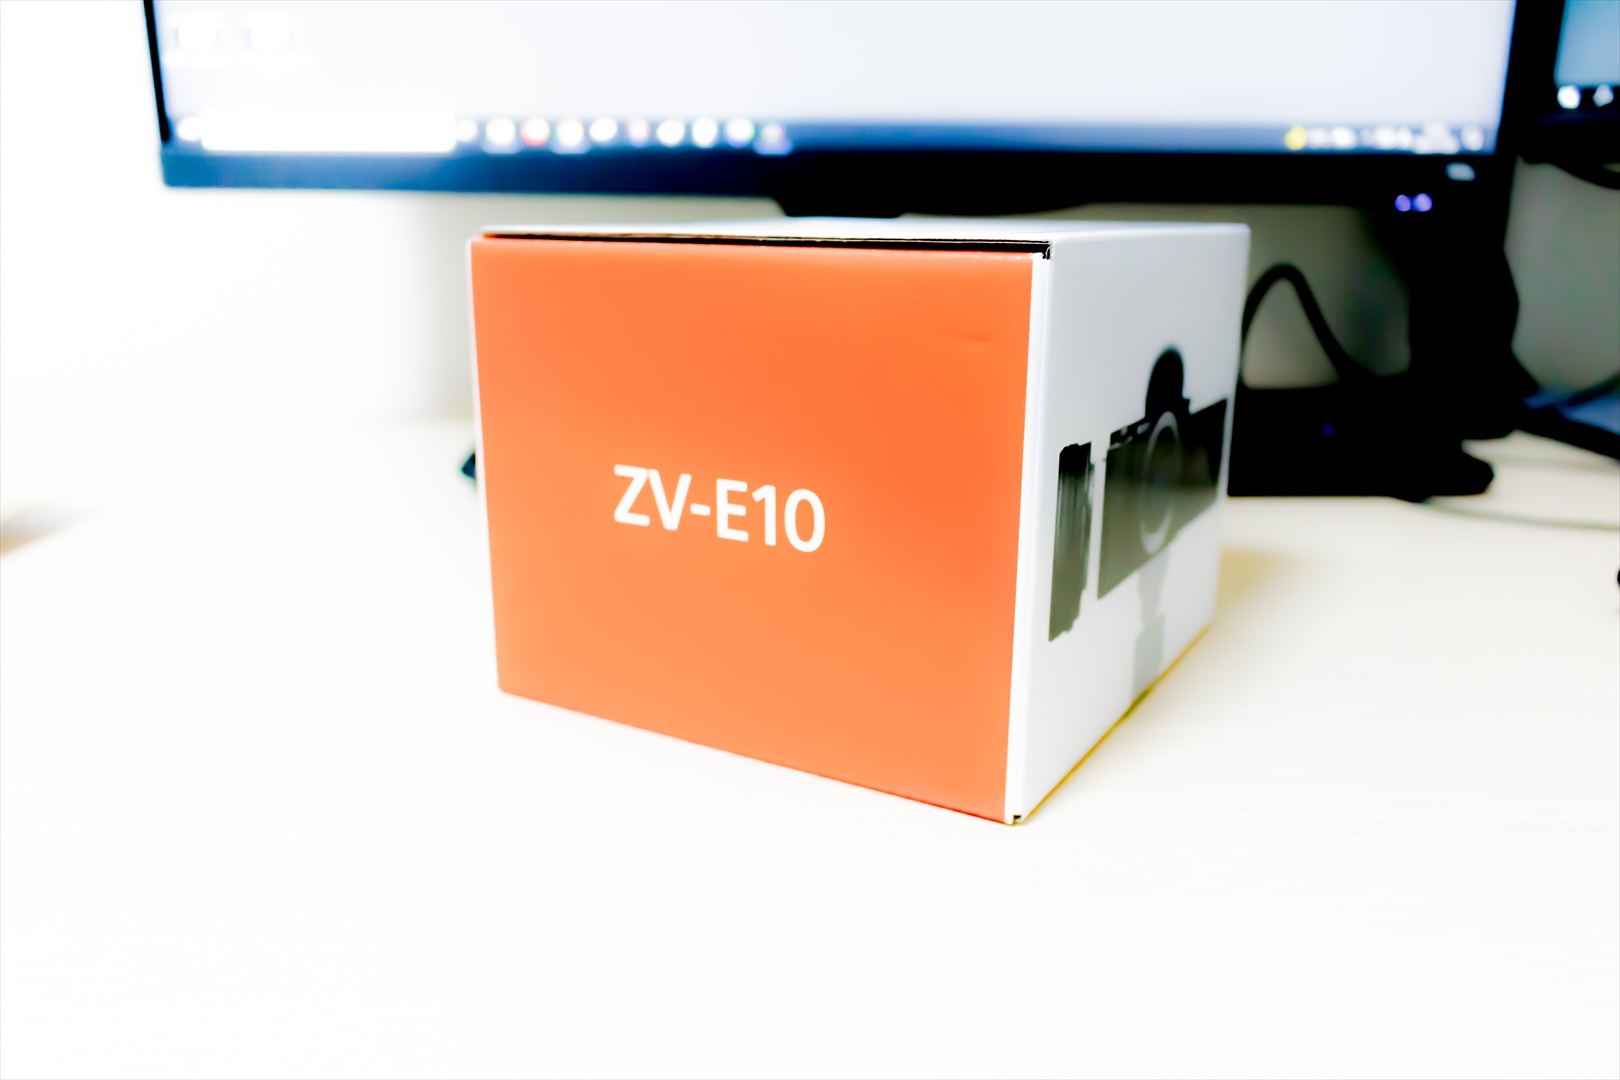 ZV-E10のオレンジ色がオシャレ感を醸し出しています。こういう箱って捨てられないんですよね～。